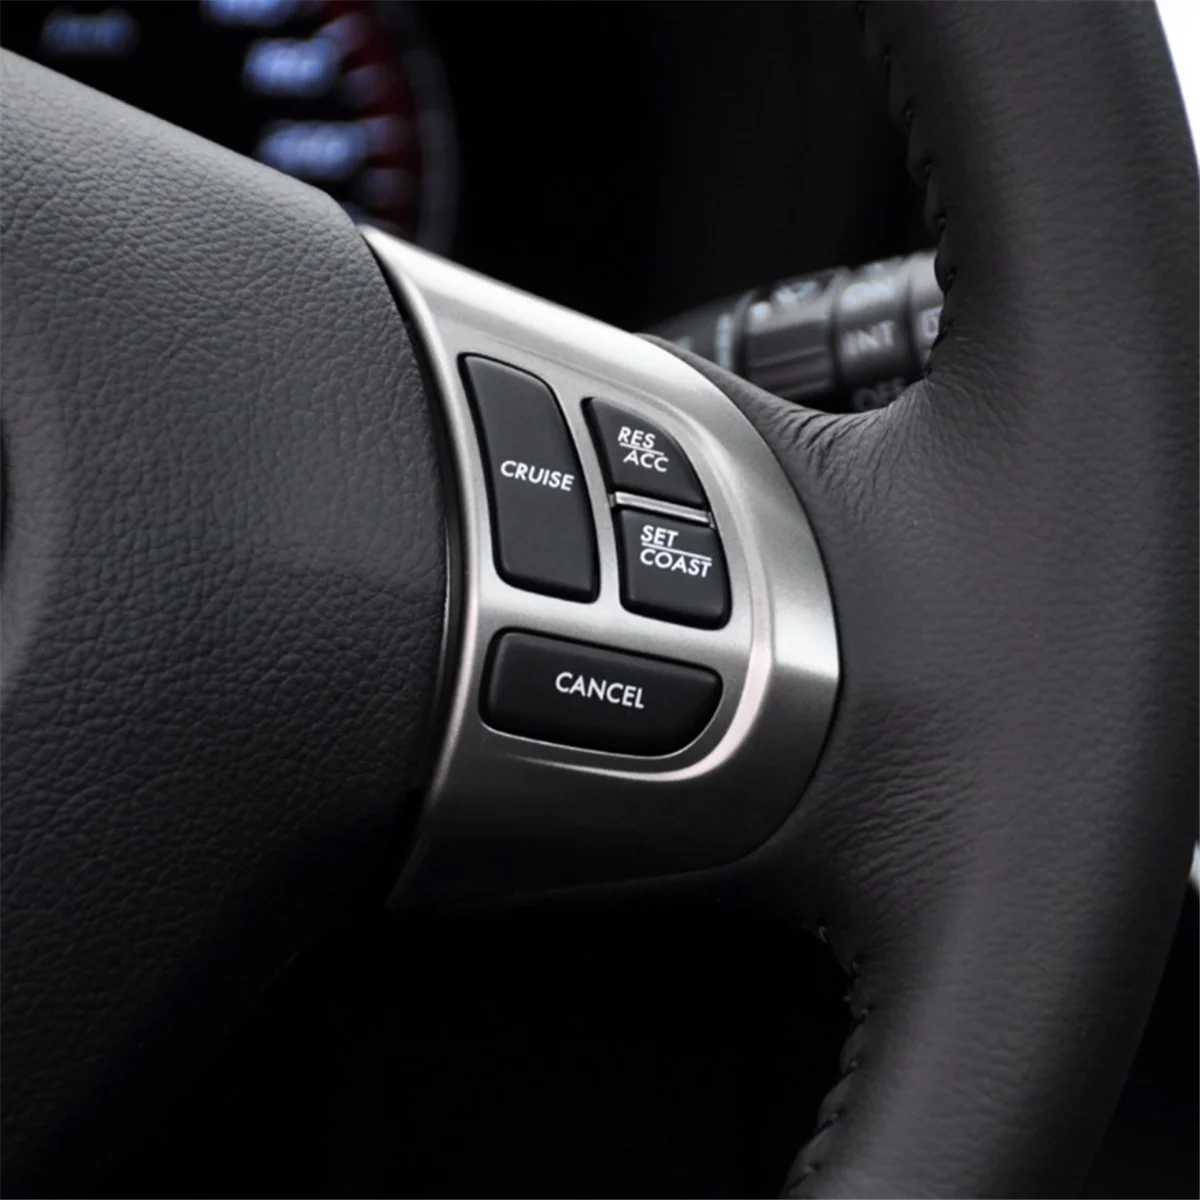 Переключатель кнопки управления аудиосистемой на руле автомобиля Переключатель круиз-контроля с жгутом проводов для Subaru Forester - 5